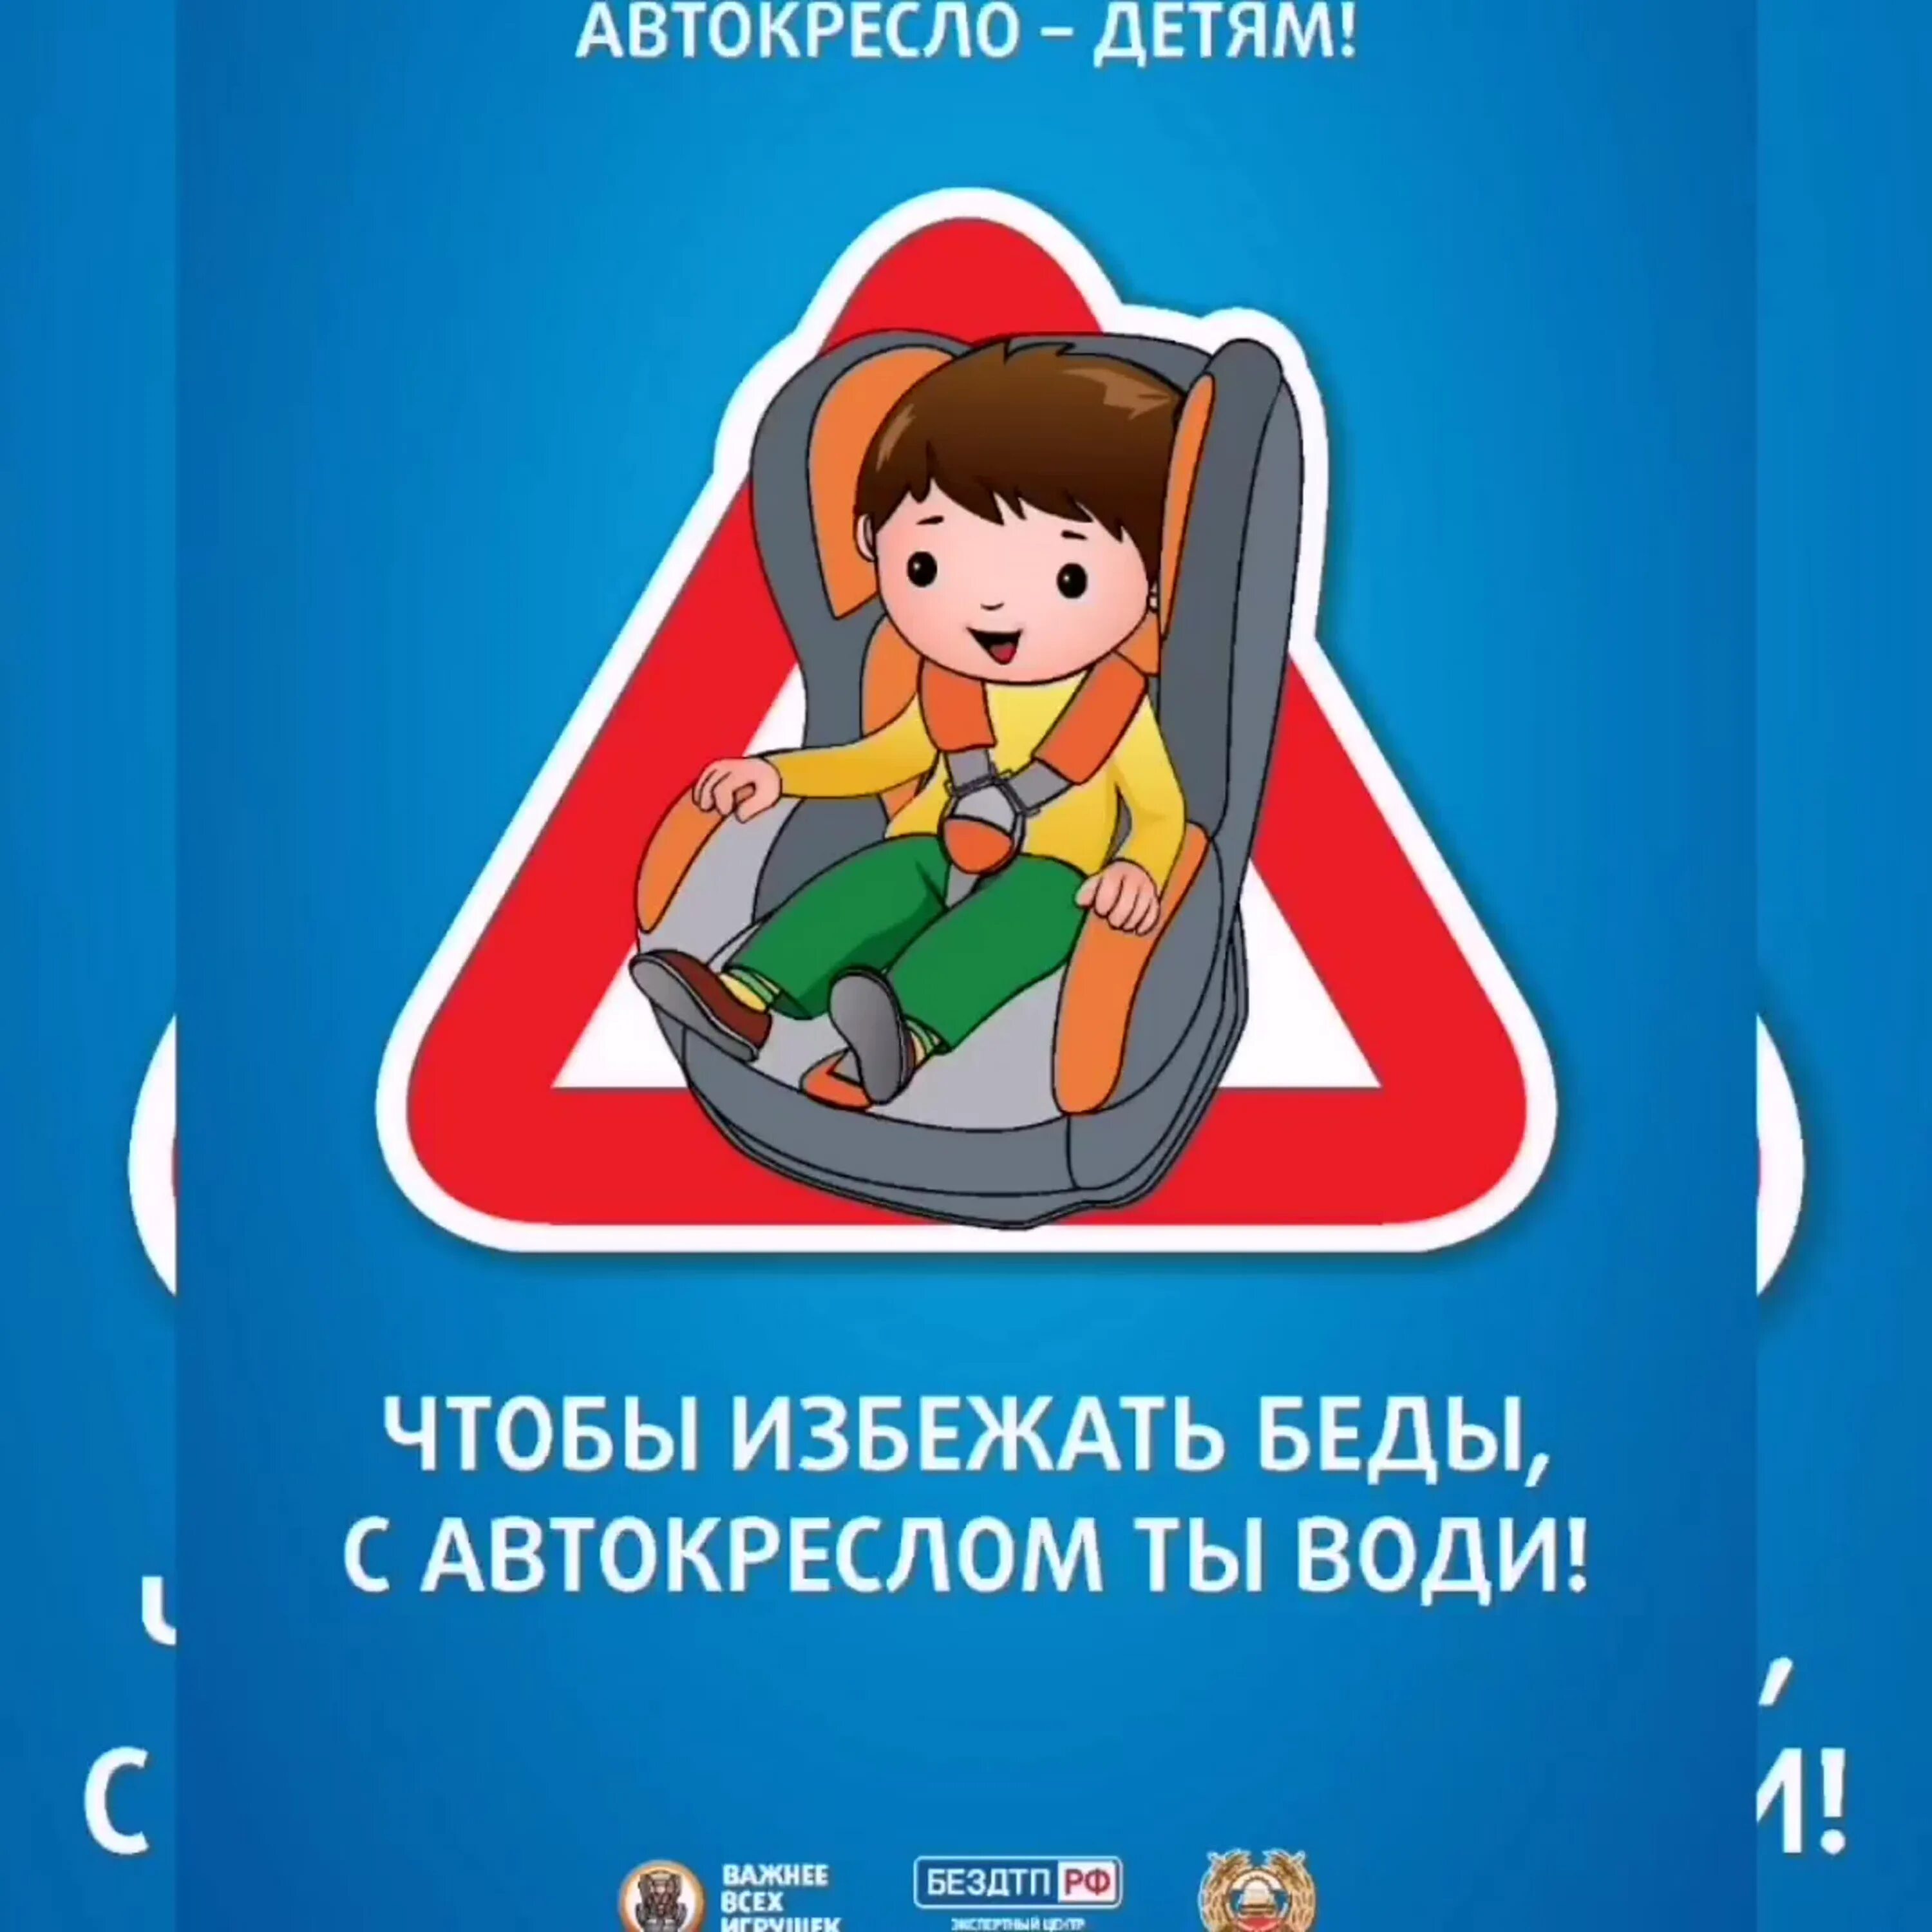 Автокресло для родителей. Автокресло для детей. Акция автокресло детям в детском саду. Плакат про автокресла для детей. Плакат автокресло детям.